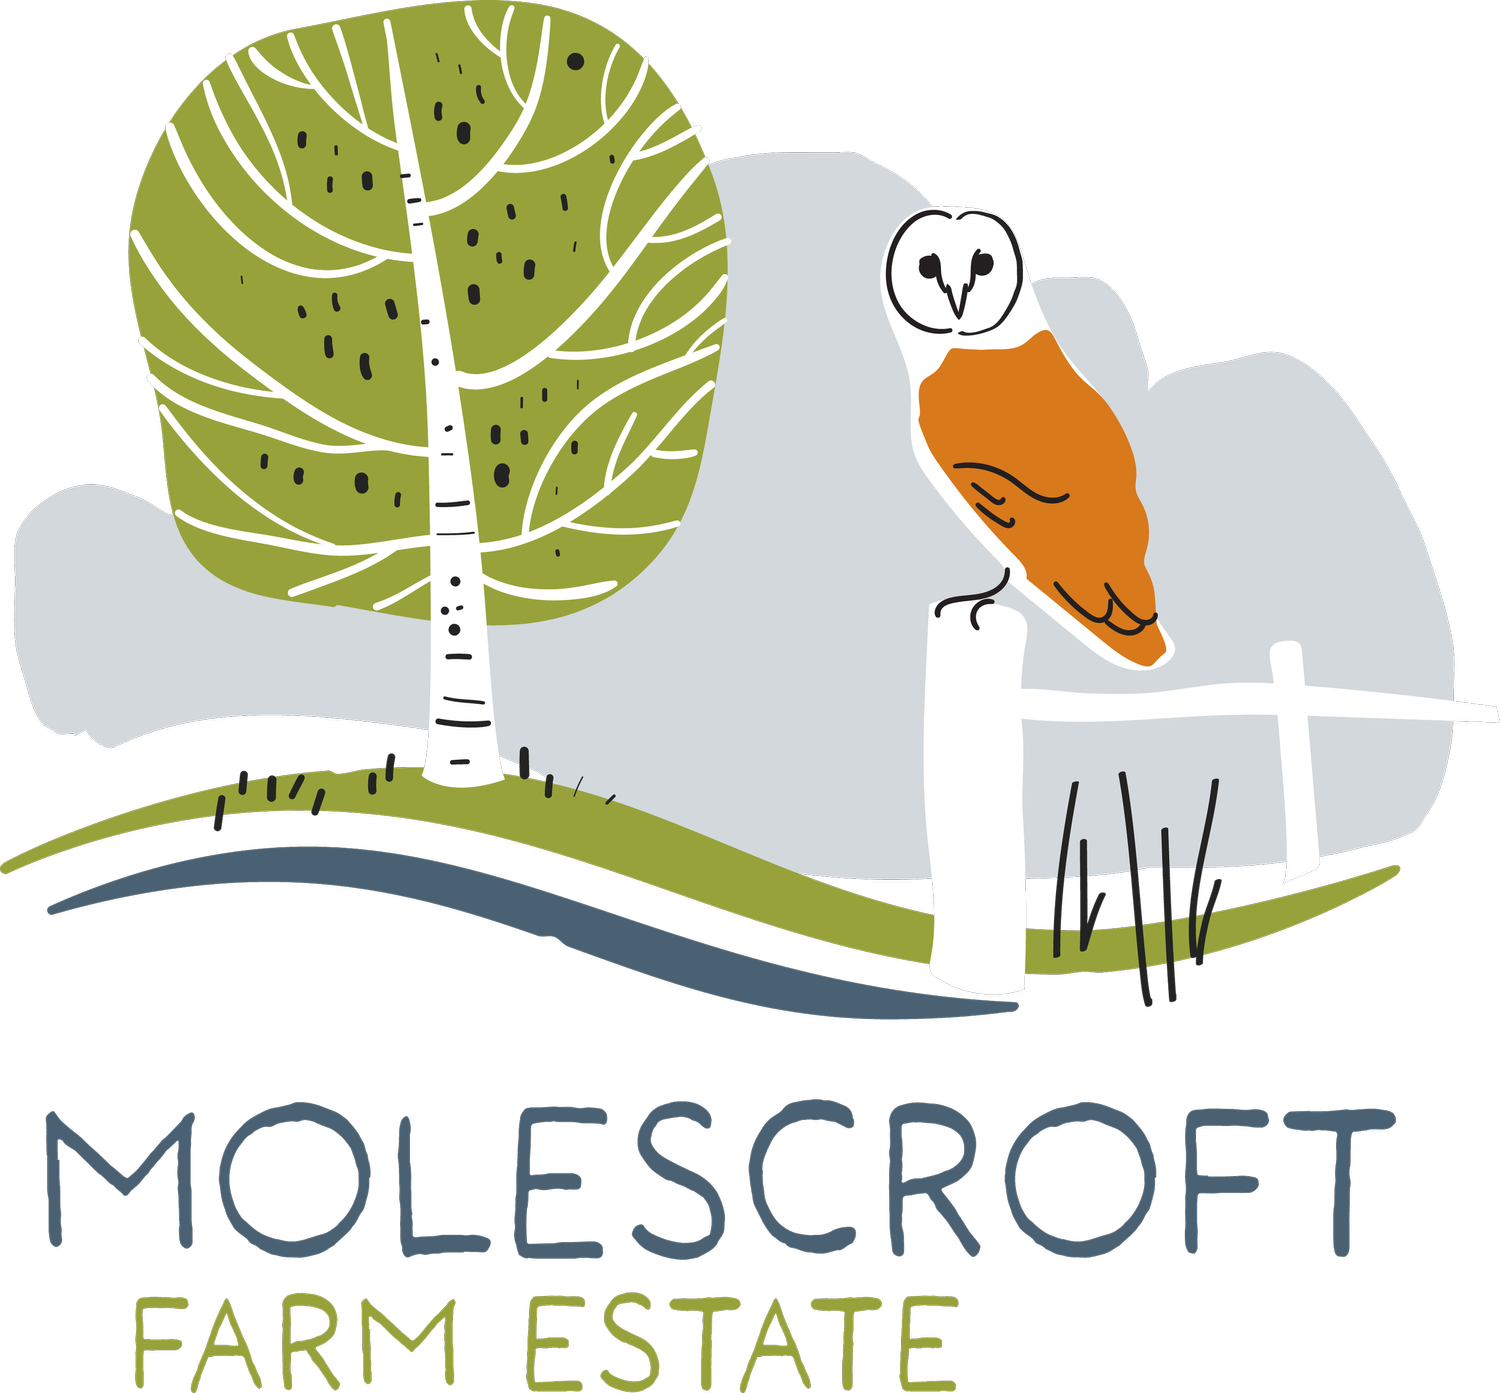 Molescroft Farm Estate